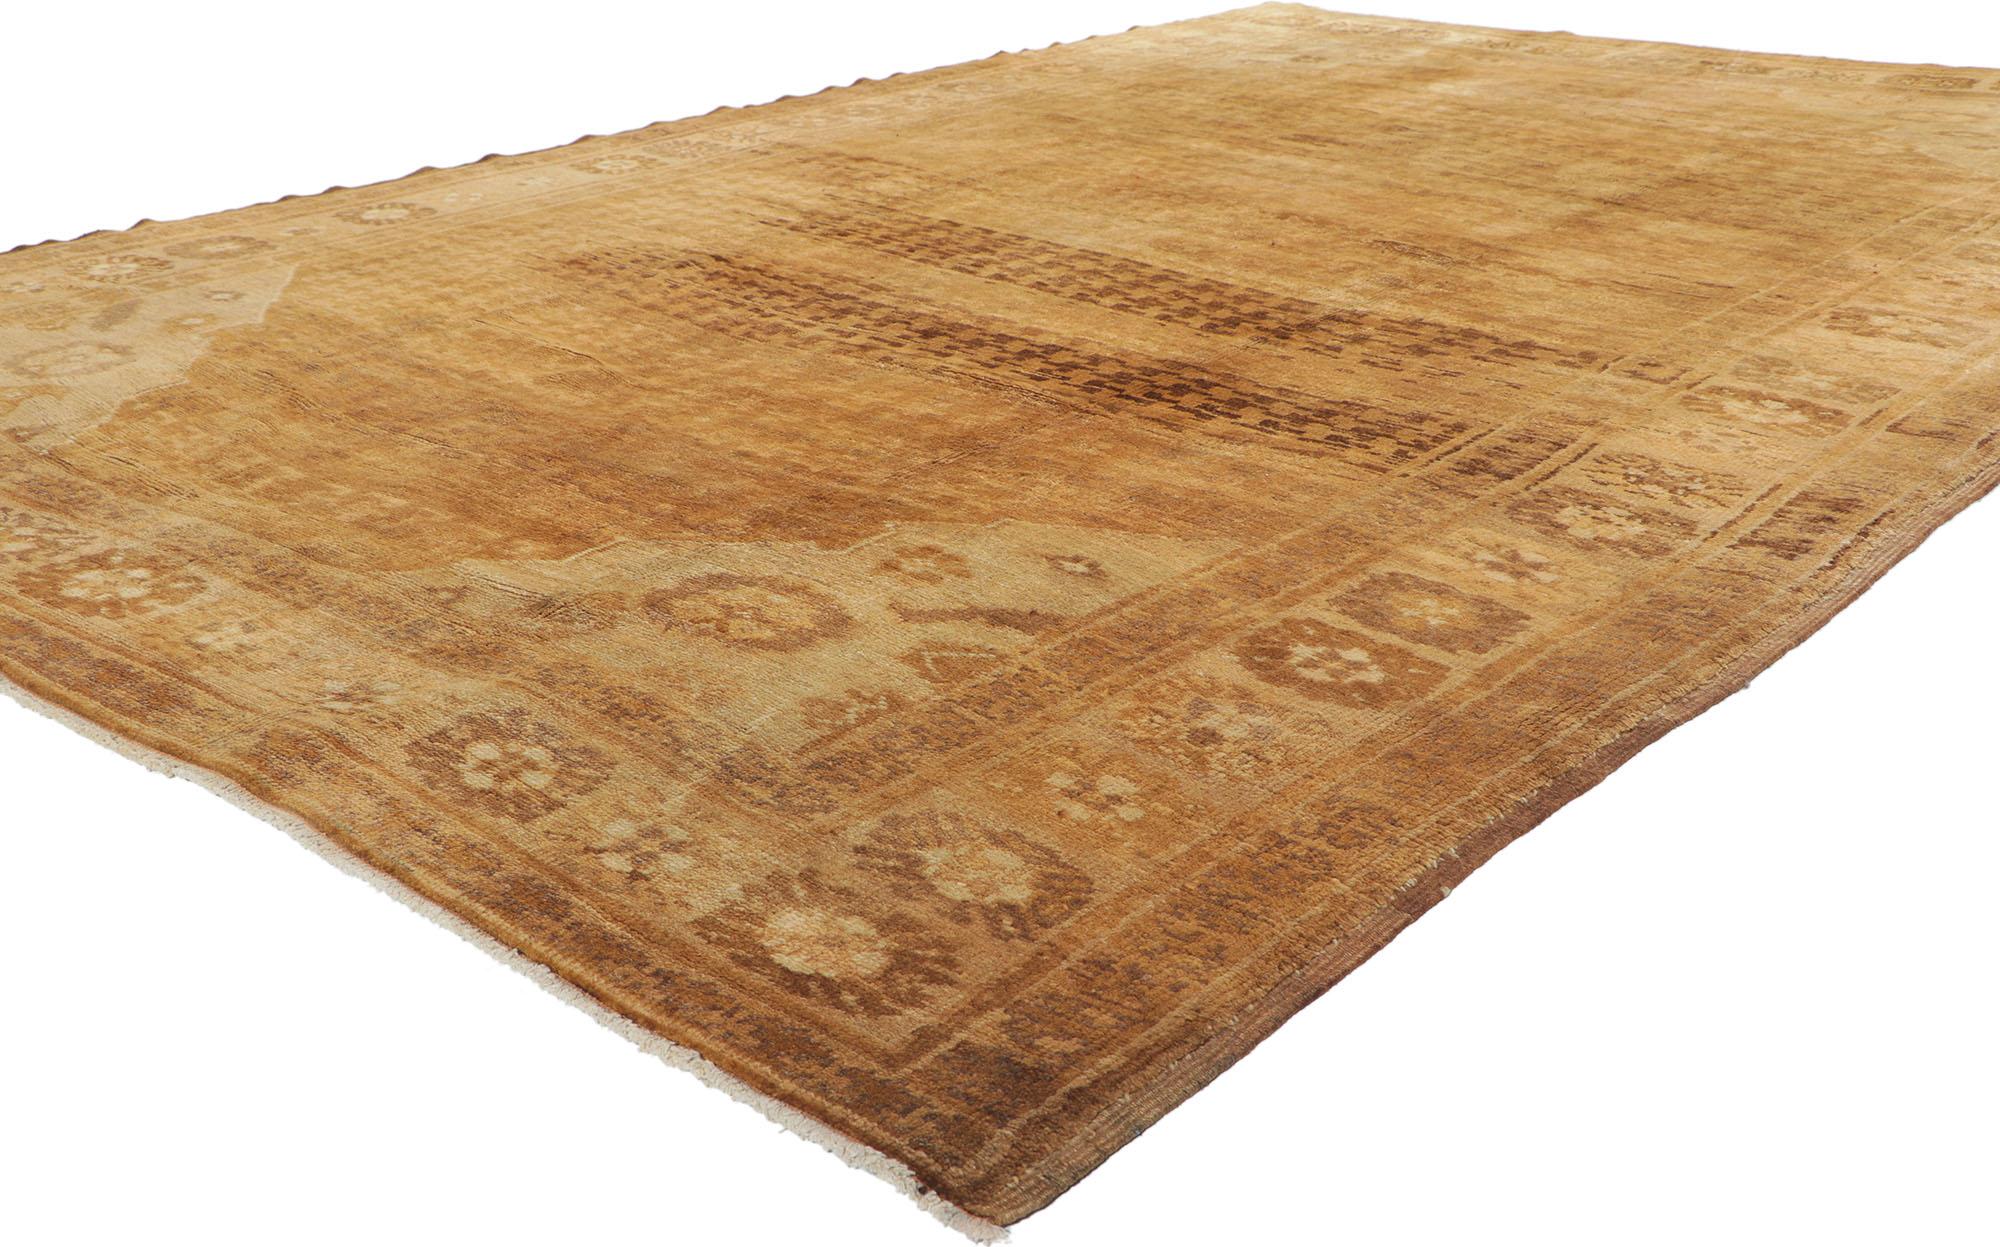 50388 Antiker türkischer Kars Oushak Teppich mit Mid-Century Modern Style 06'10 x 10'03. Mit seinen leuchtenden, warmen Farbtönen und seiner betörenden Schönheit verleiht dieser handgeknüpfte, antike türkische Kars-Teppich aus Wolle einen